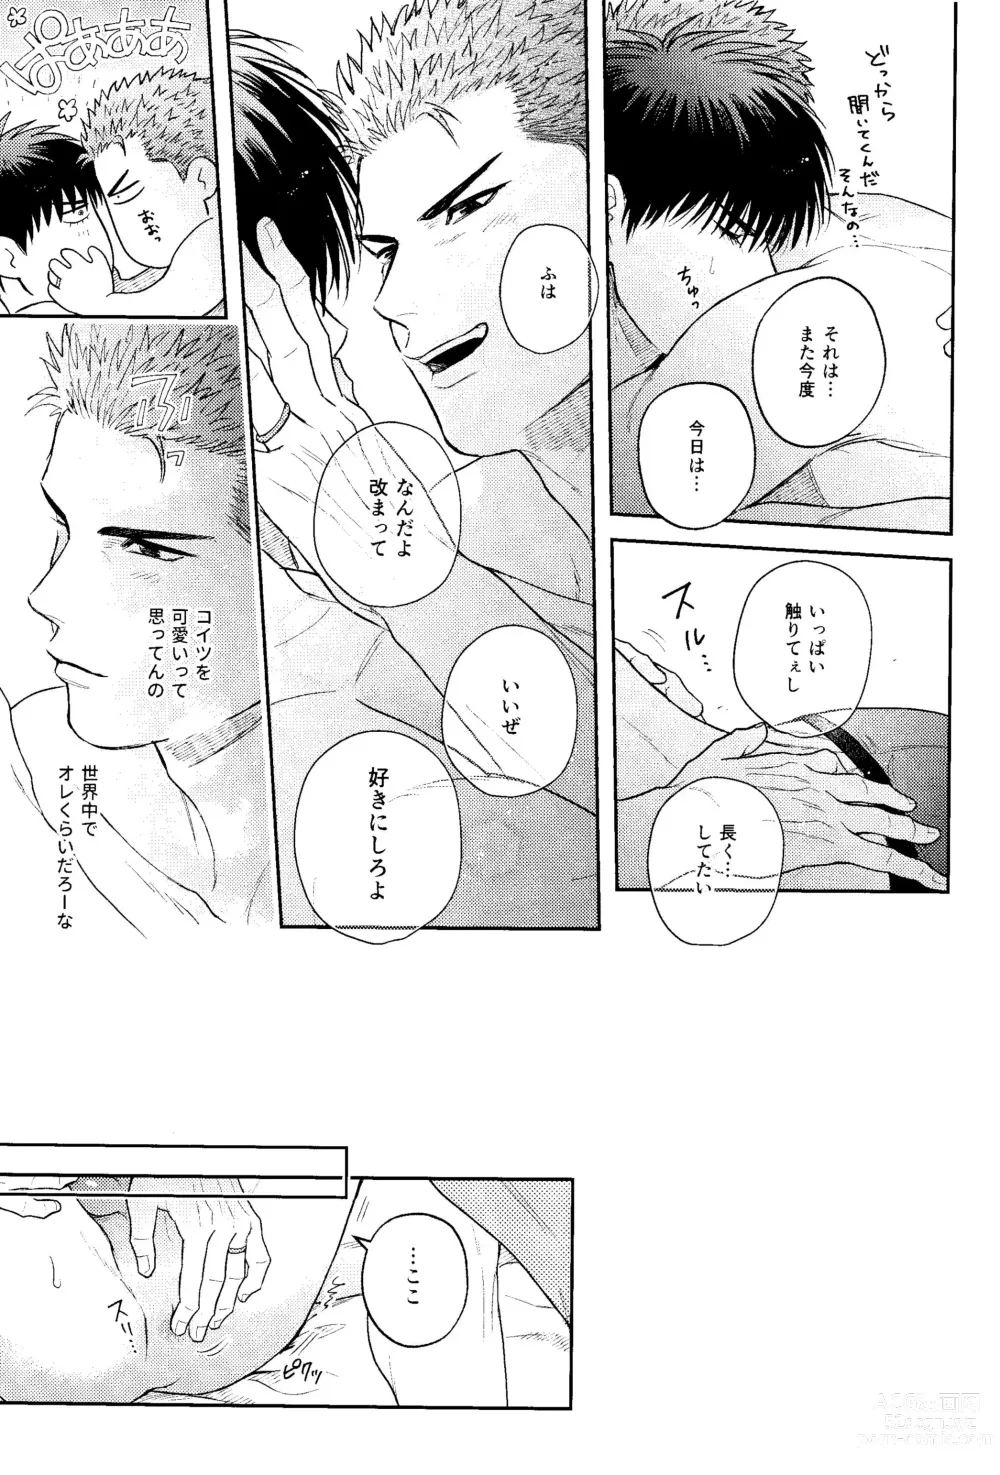 Page 11 of doujinshi Motto Motto Aishitai